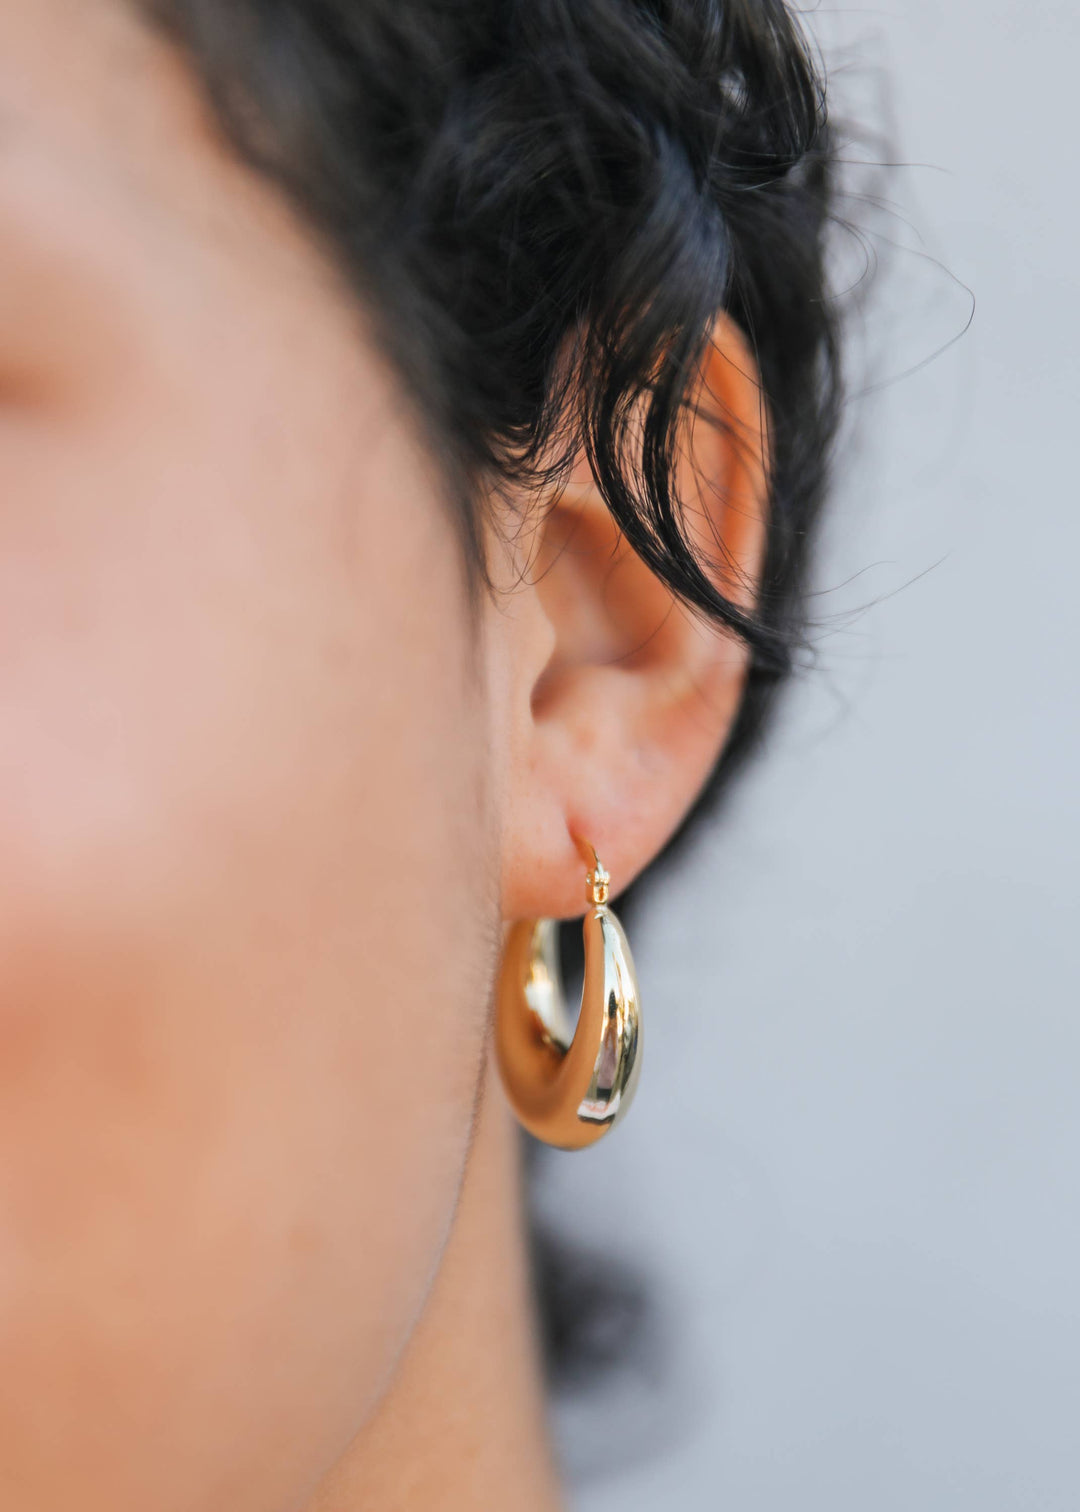 JaxKelly Earrings Sculptural Wide Hoop - Earring